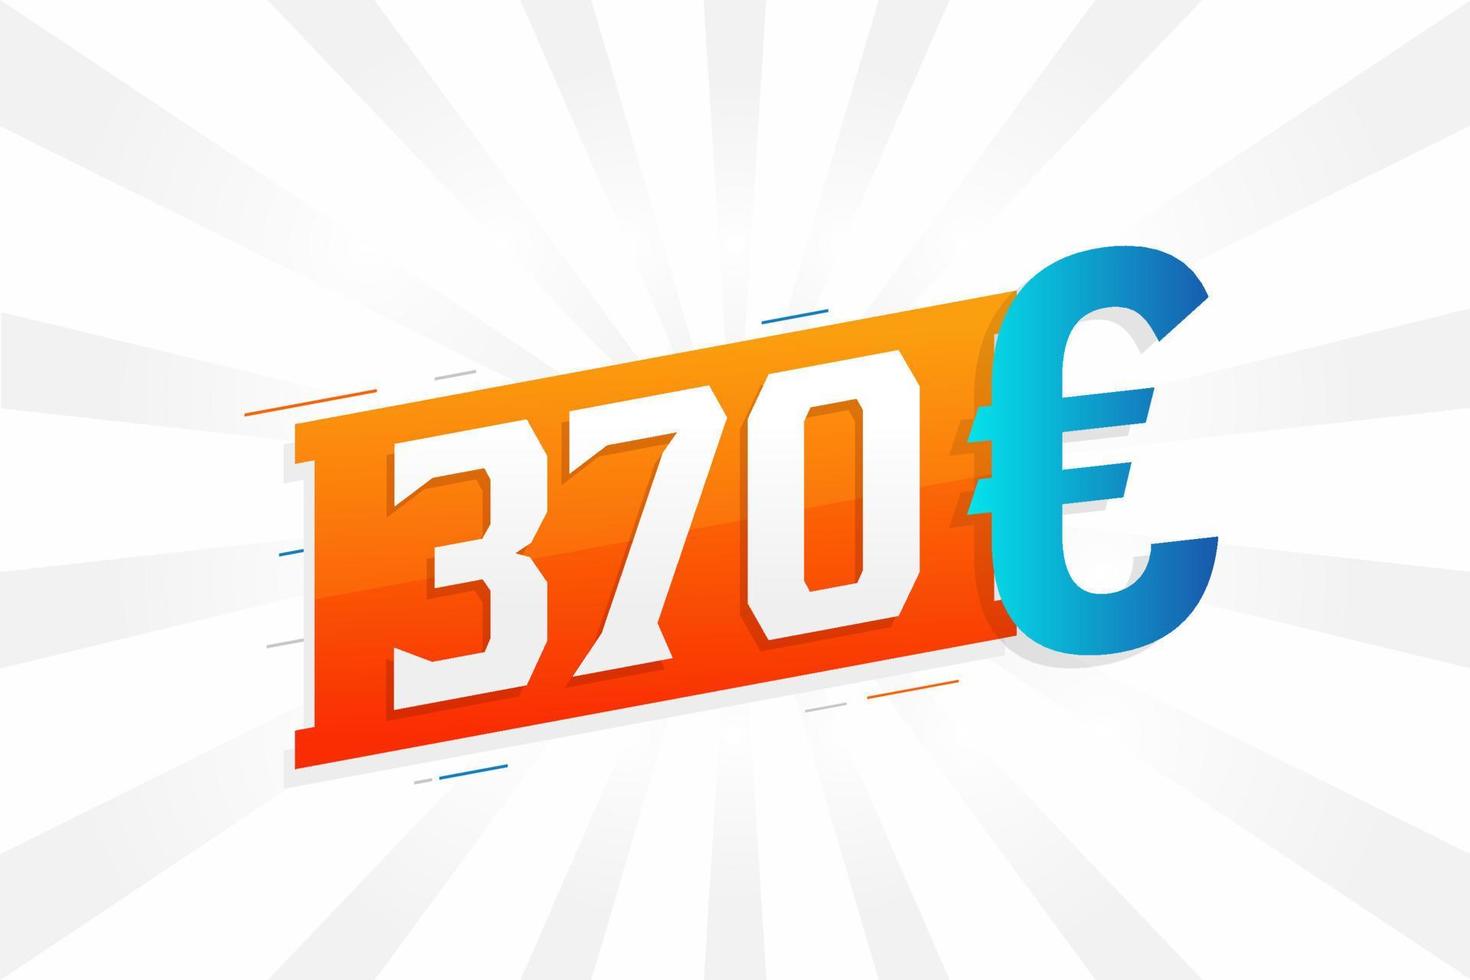 Symbole de texte vectoriel de devise de 370 euros. 370 euros vecteur de stock d'argent de l'union européenne